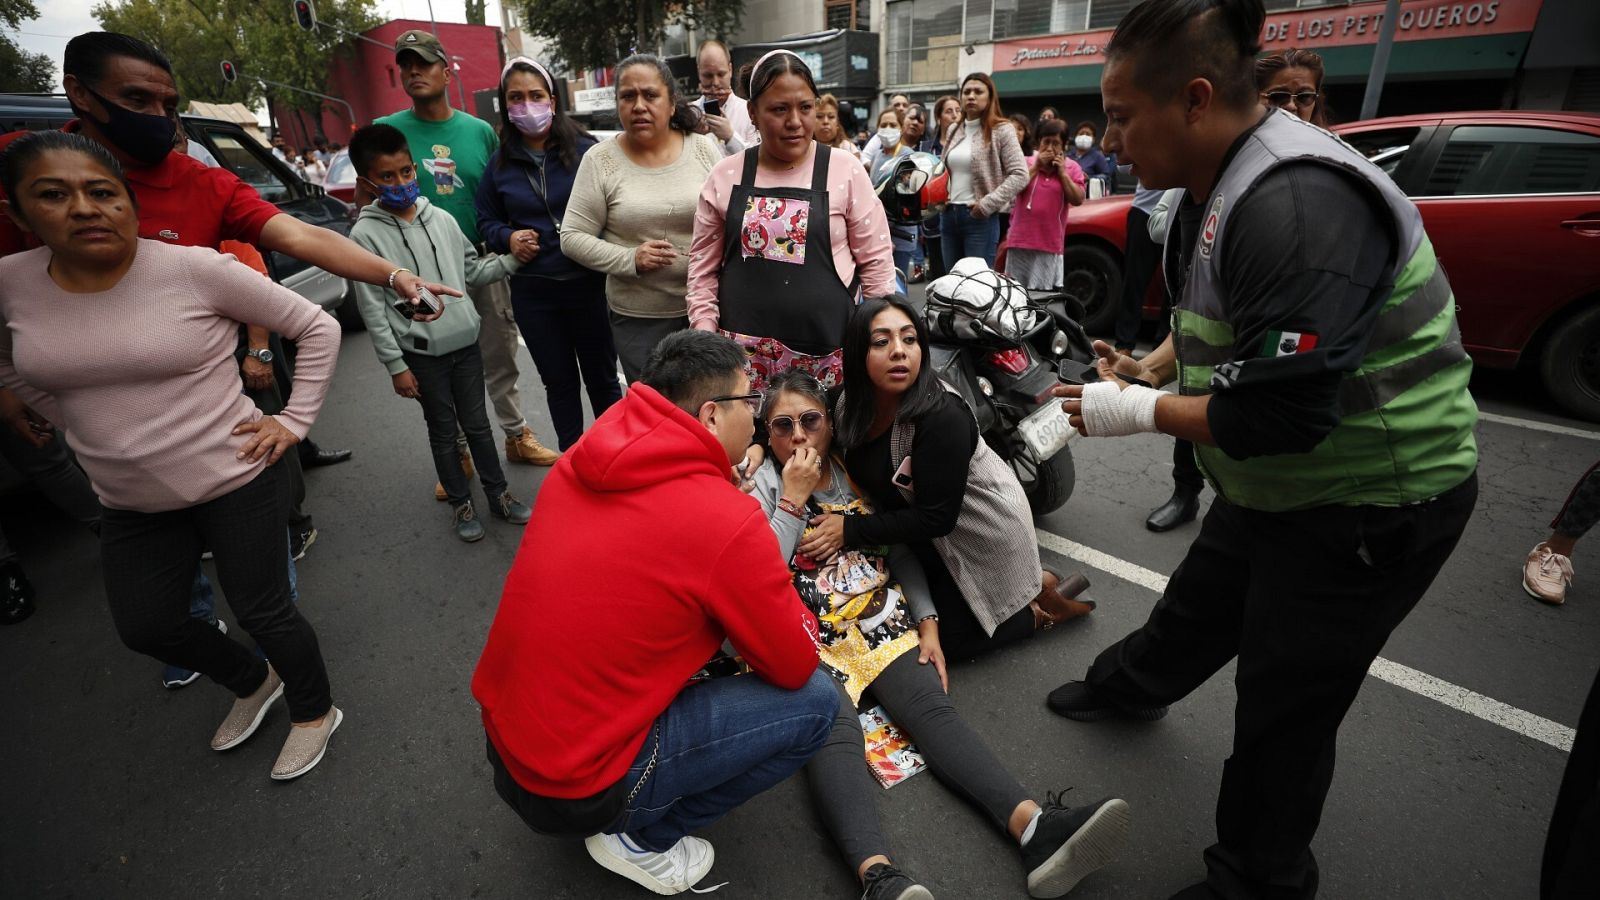 Un terremoto de magnitud 7,7 sacude el centro de México el mismo día que otros dos seísmos históricos